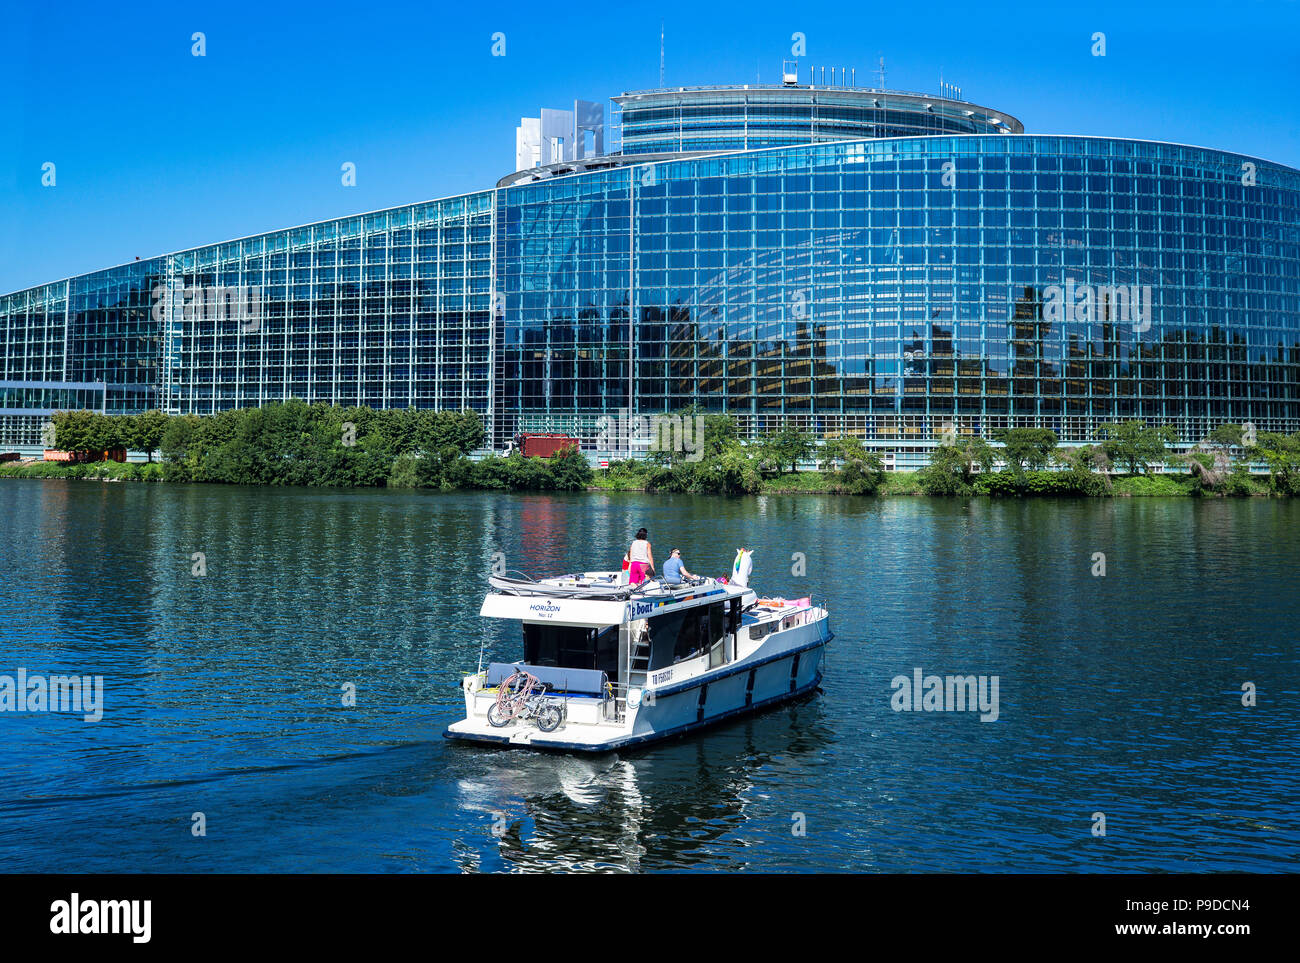 Strasbourg, bateau de plaisance naviguant sur l'Ill, bâtiment Louise Weiss, UE, Parlement européen, Alsace, France, Europe, Banque D'Images